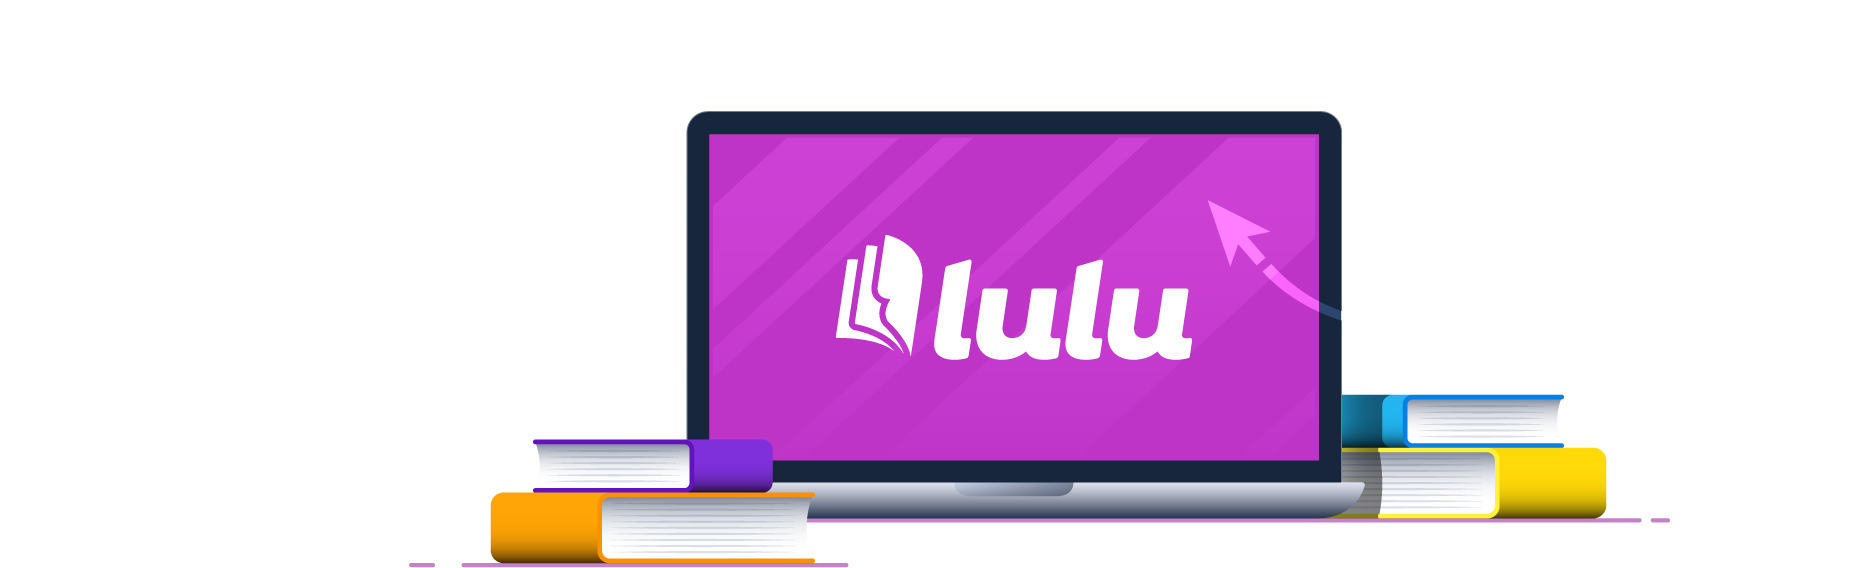 Lulu book design template dropdown image